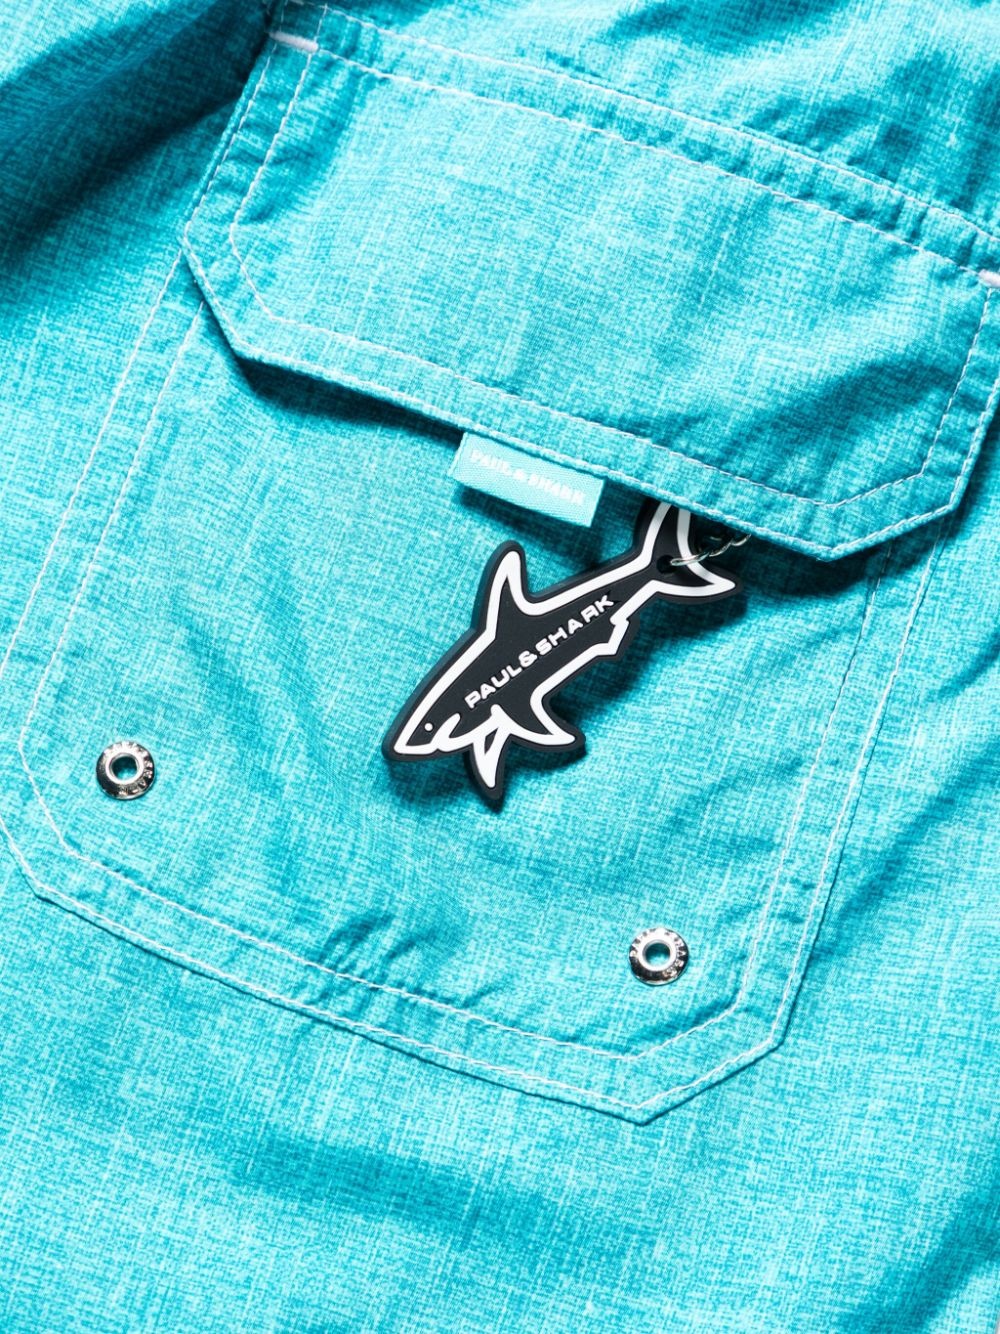 shark-charm textil-print swim shorts - 3